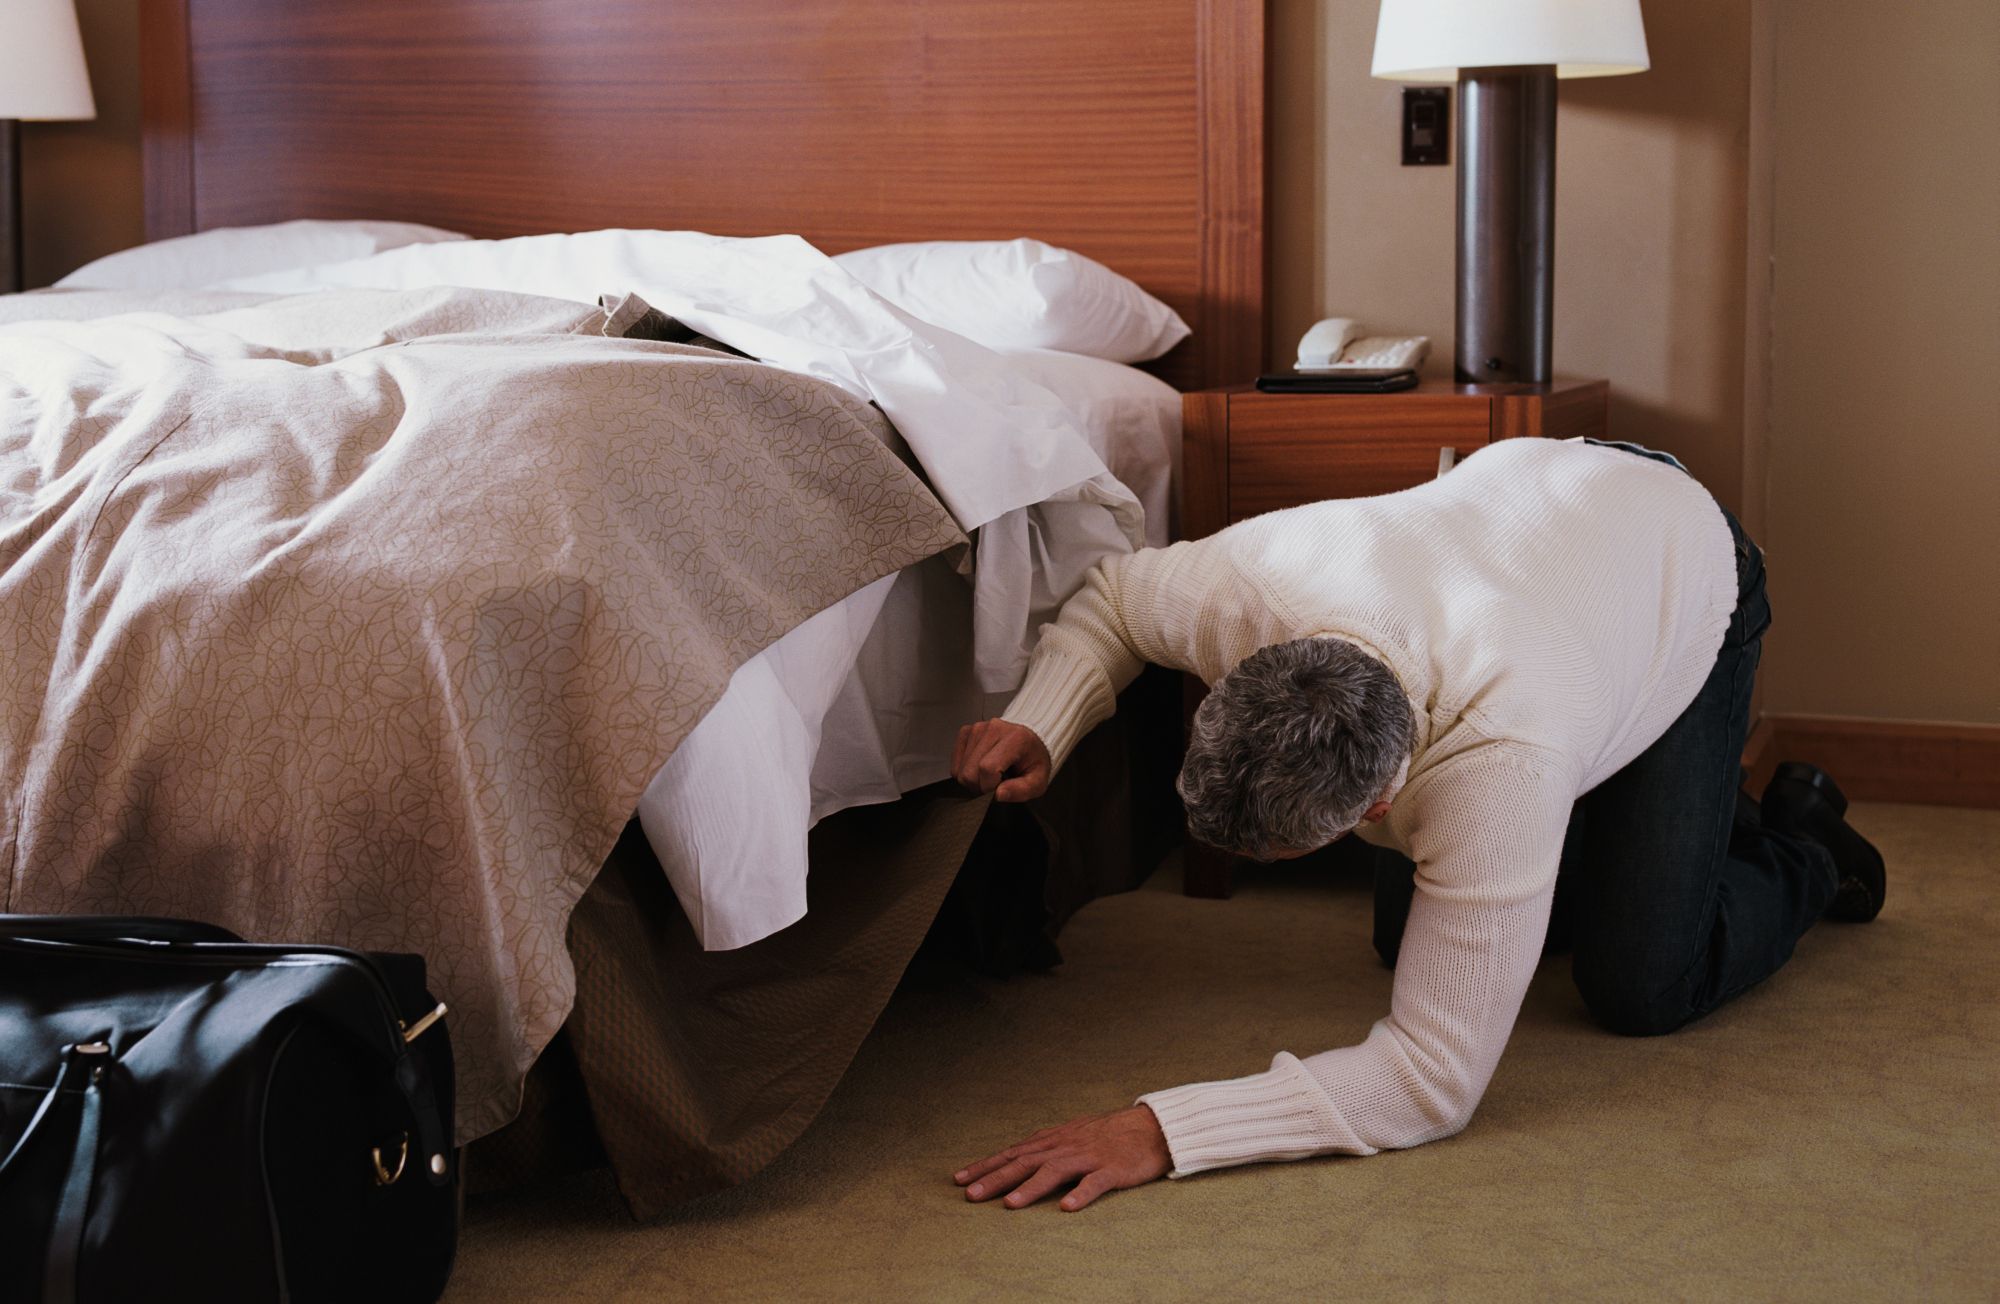 Сын залез в постель. Человек заглядывает под кровать. Ищет под кроватью. Случай в отеле.